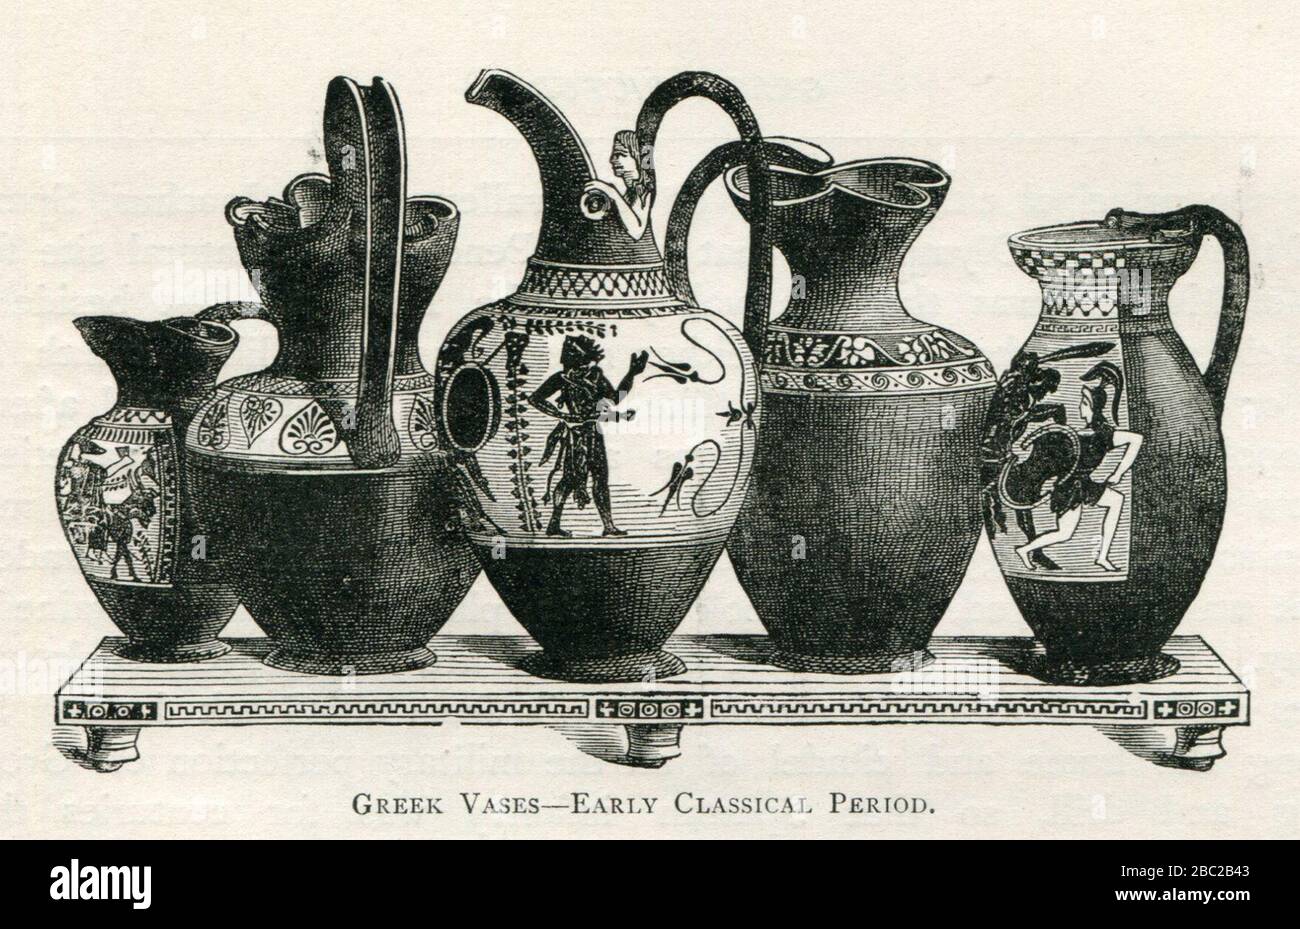 Vases grecs - début de la période classique - Mahathy John Pentland - 1890. Banque D'Images